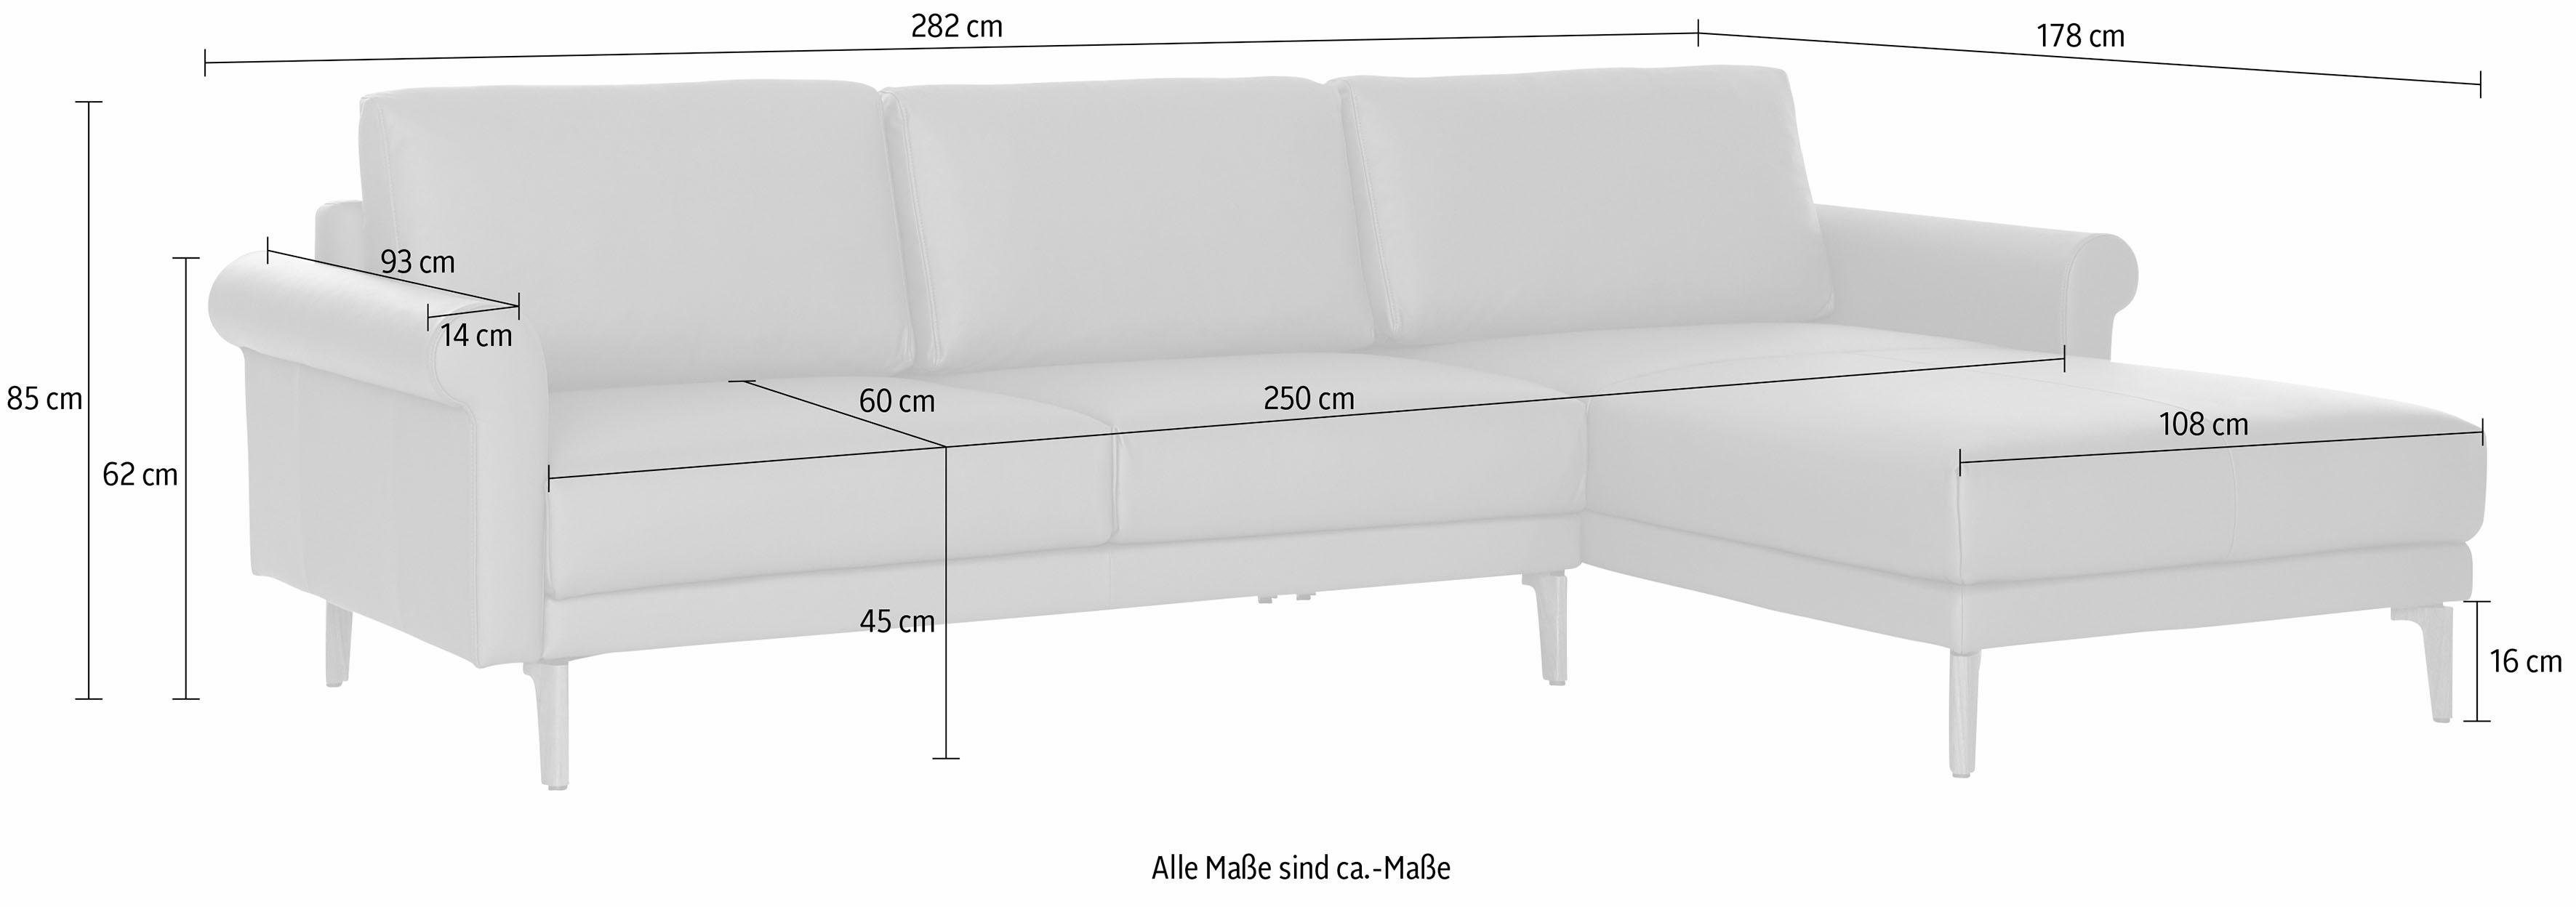 Landhaus, hülsta cm, modern sofa Nussbaum Ecksofa 282 Schnecke hs.450, Breite Fuß Armlehne